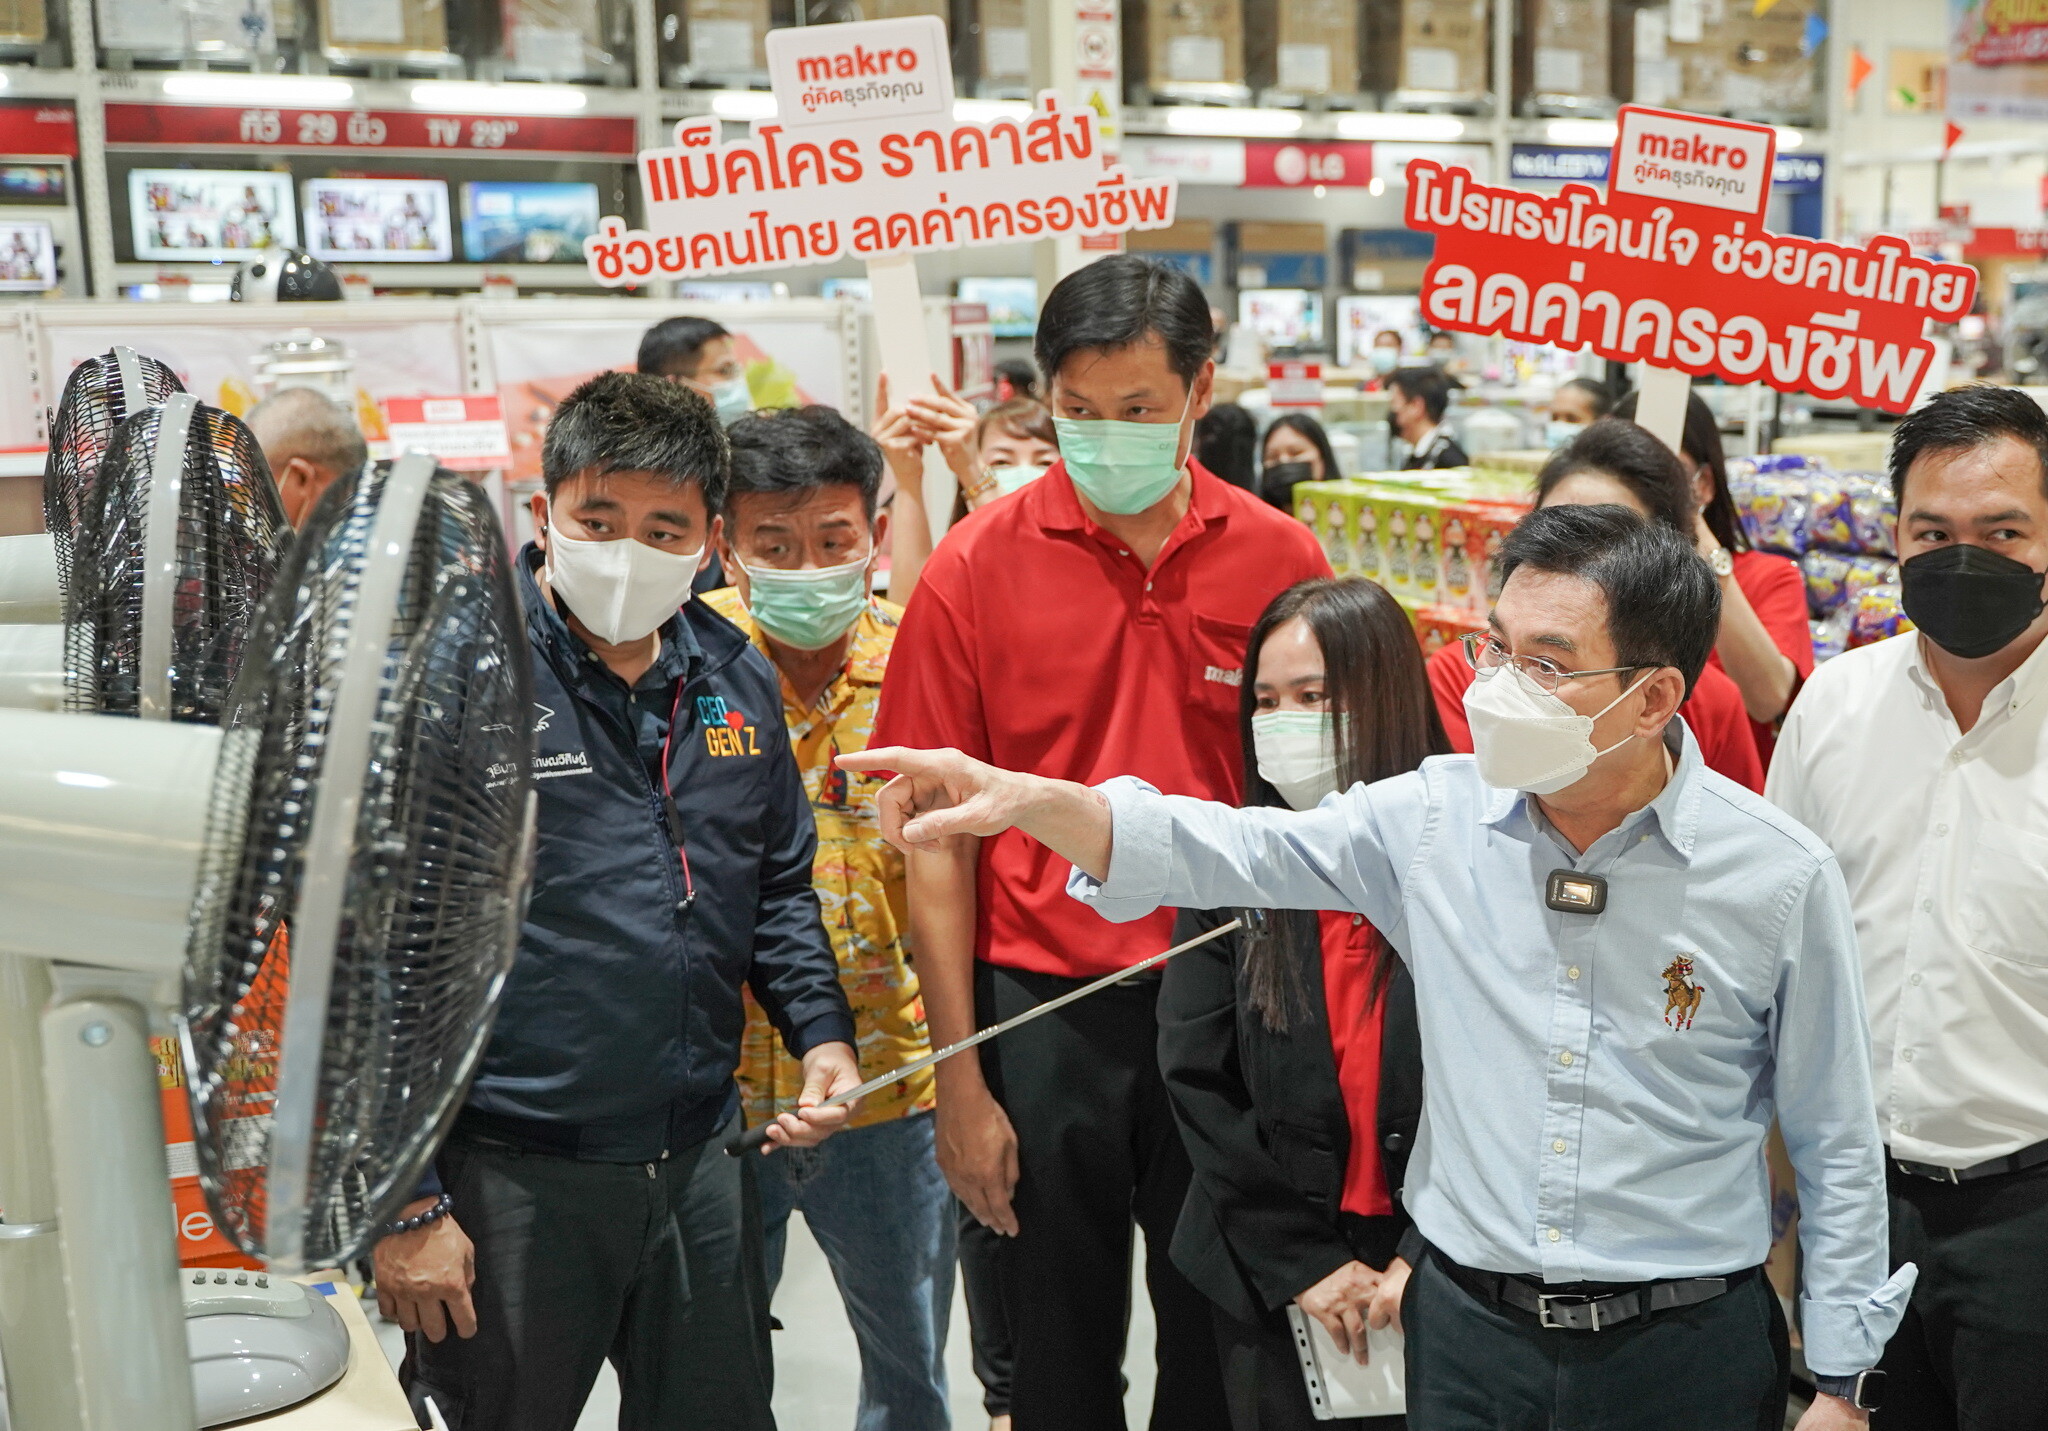 แม็คโคร จับมือกระทรวงพาณิชย์ ช่วยคนไทยสู้วิกฤตค่าครองชีพ ชูราคาขายส่ง ตรึงราคาสินค้าจำเป็นกว่า 4,000 รายการ บรรเทาภาระประชาชน